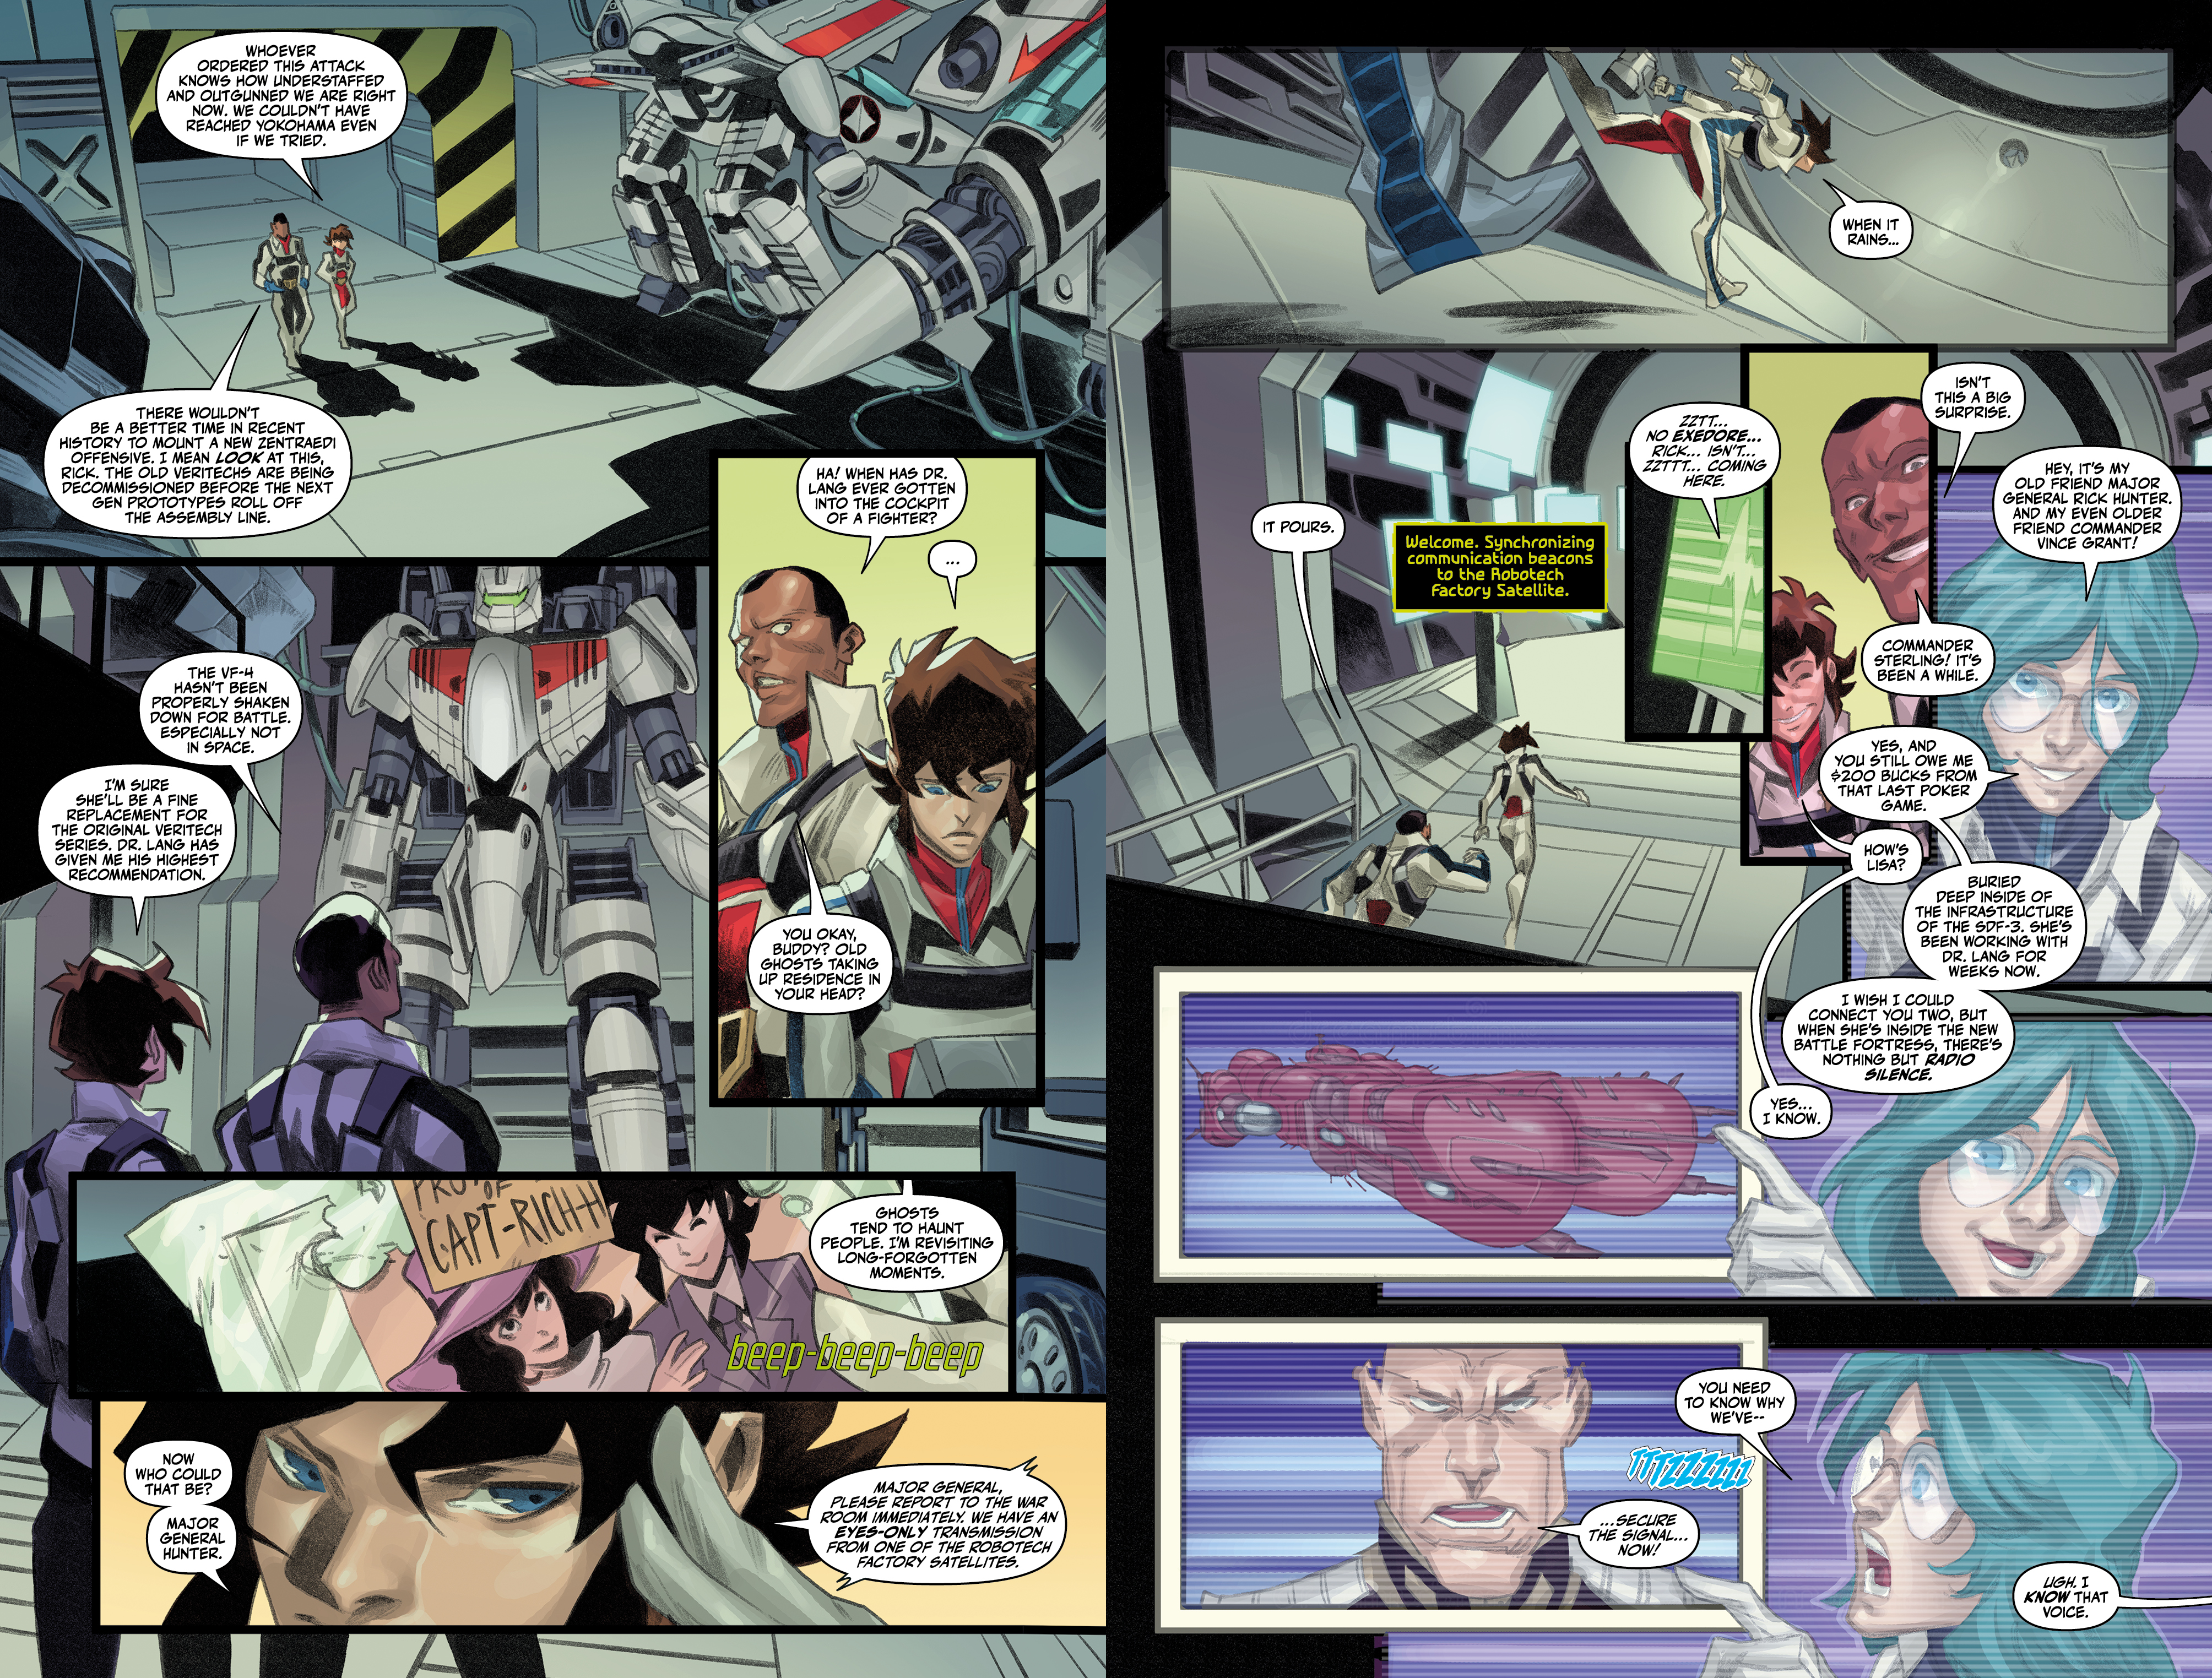 Pagina's uit Robotech: Rick Hunter #1.